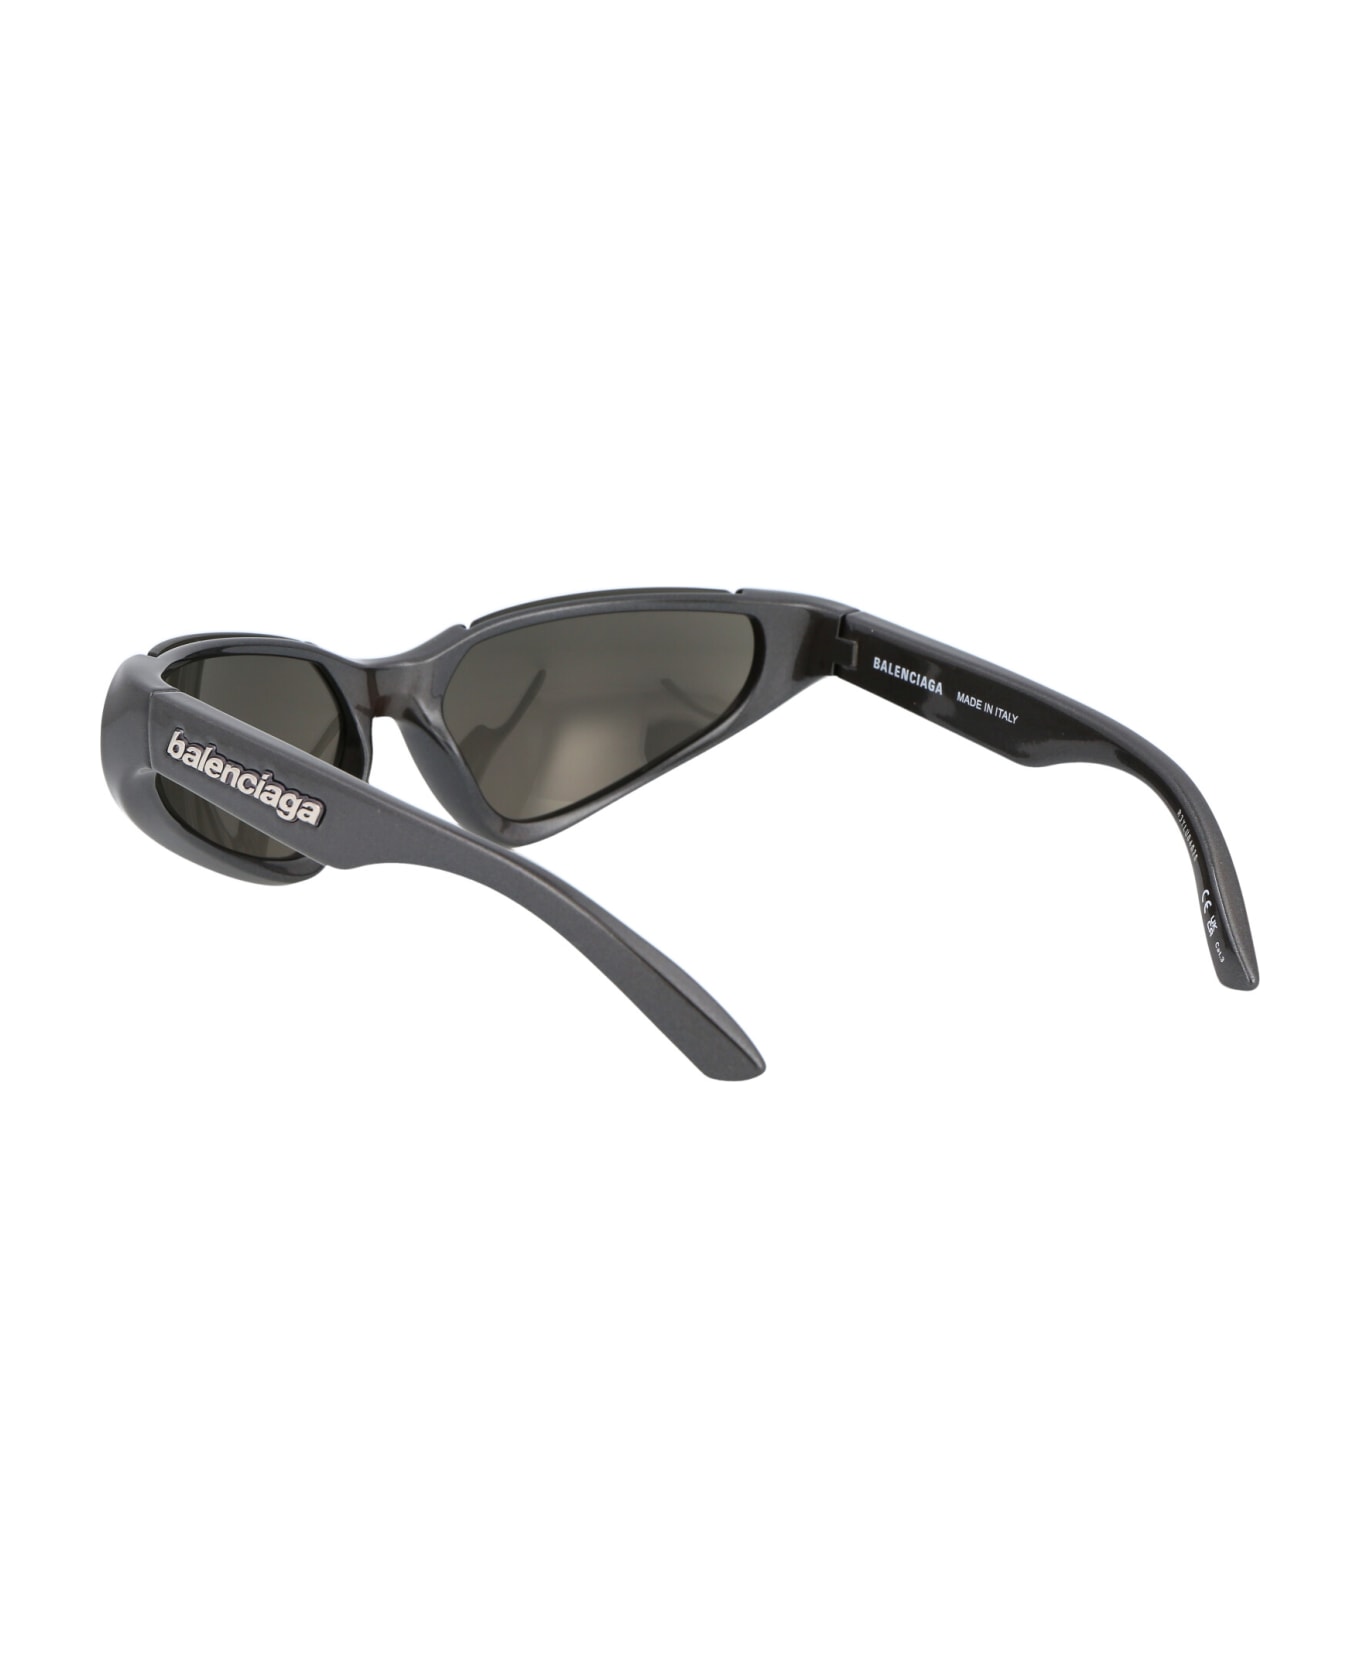 Balenciaga Eyewear Bb0202s Sunglasses - 002 SILVER SILVER SILVER